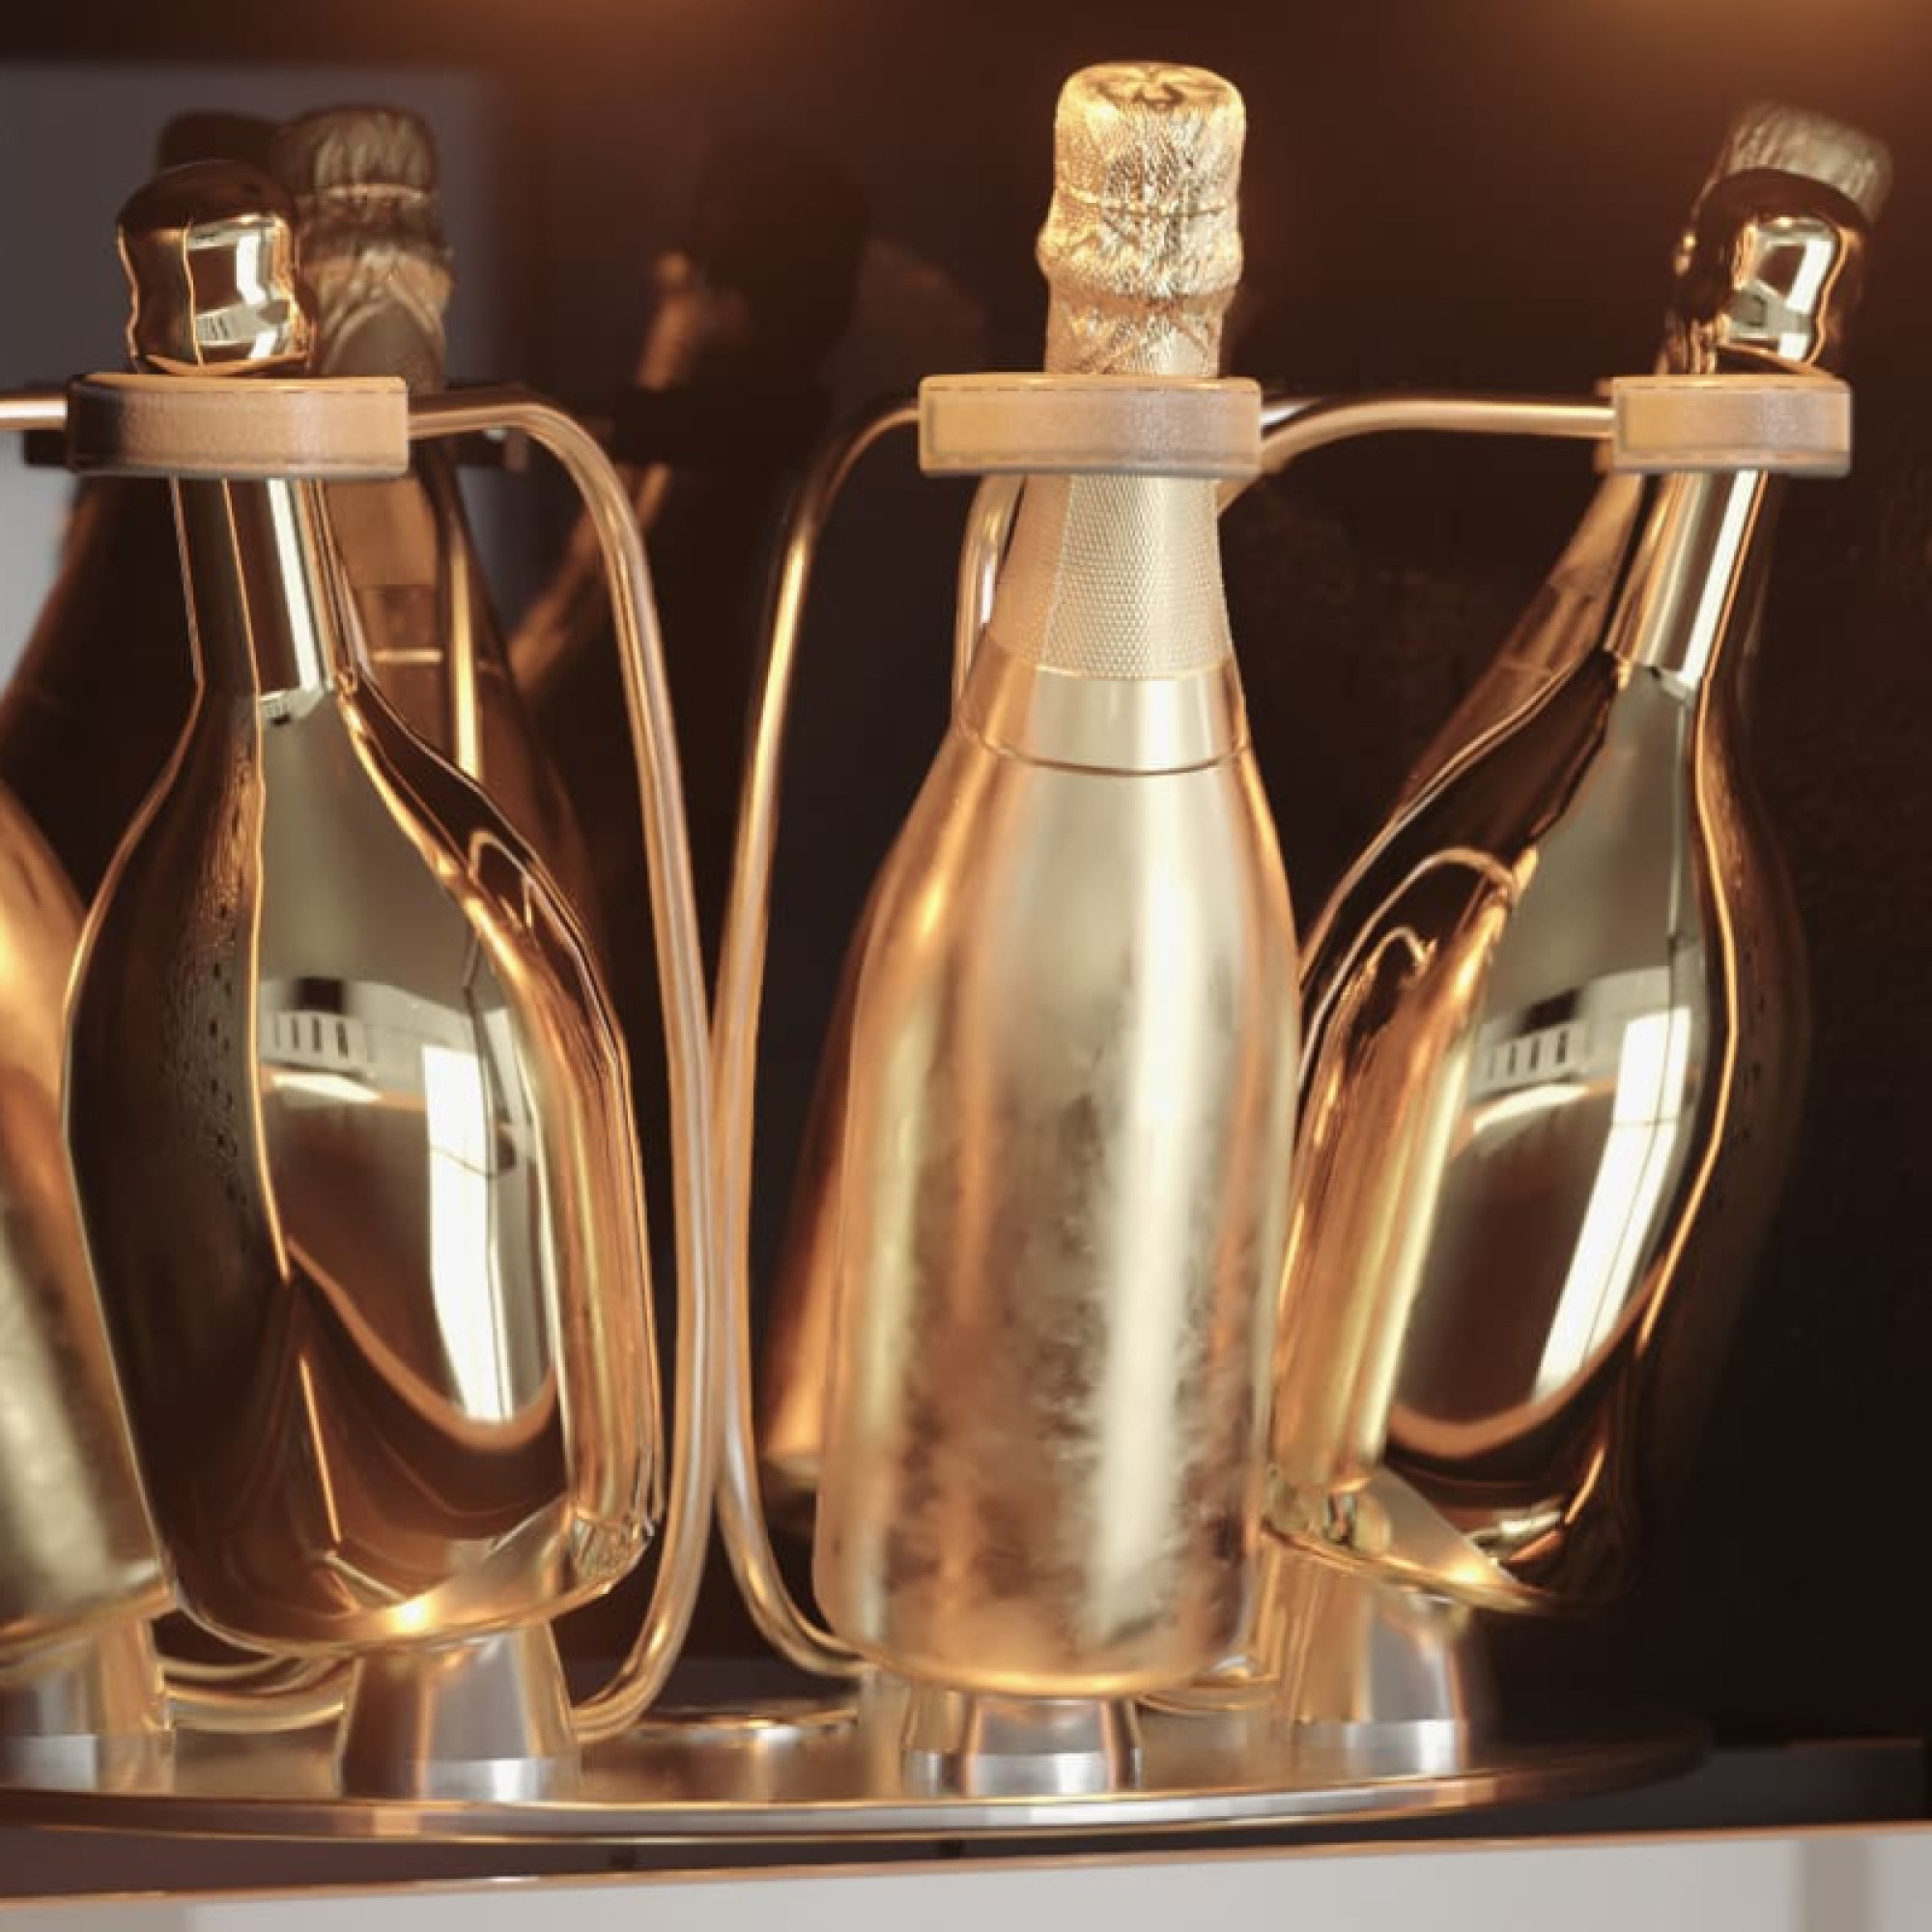 Lignes élégantes, finitions luxueuses avec son gainage cuir irisé et une façade coloris or, la sophistication ultime de l'armoire à champagne eurocave.